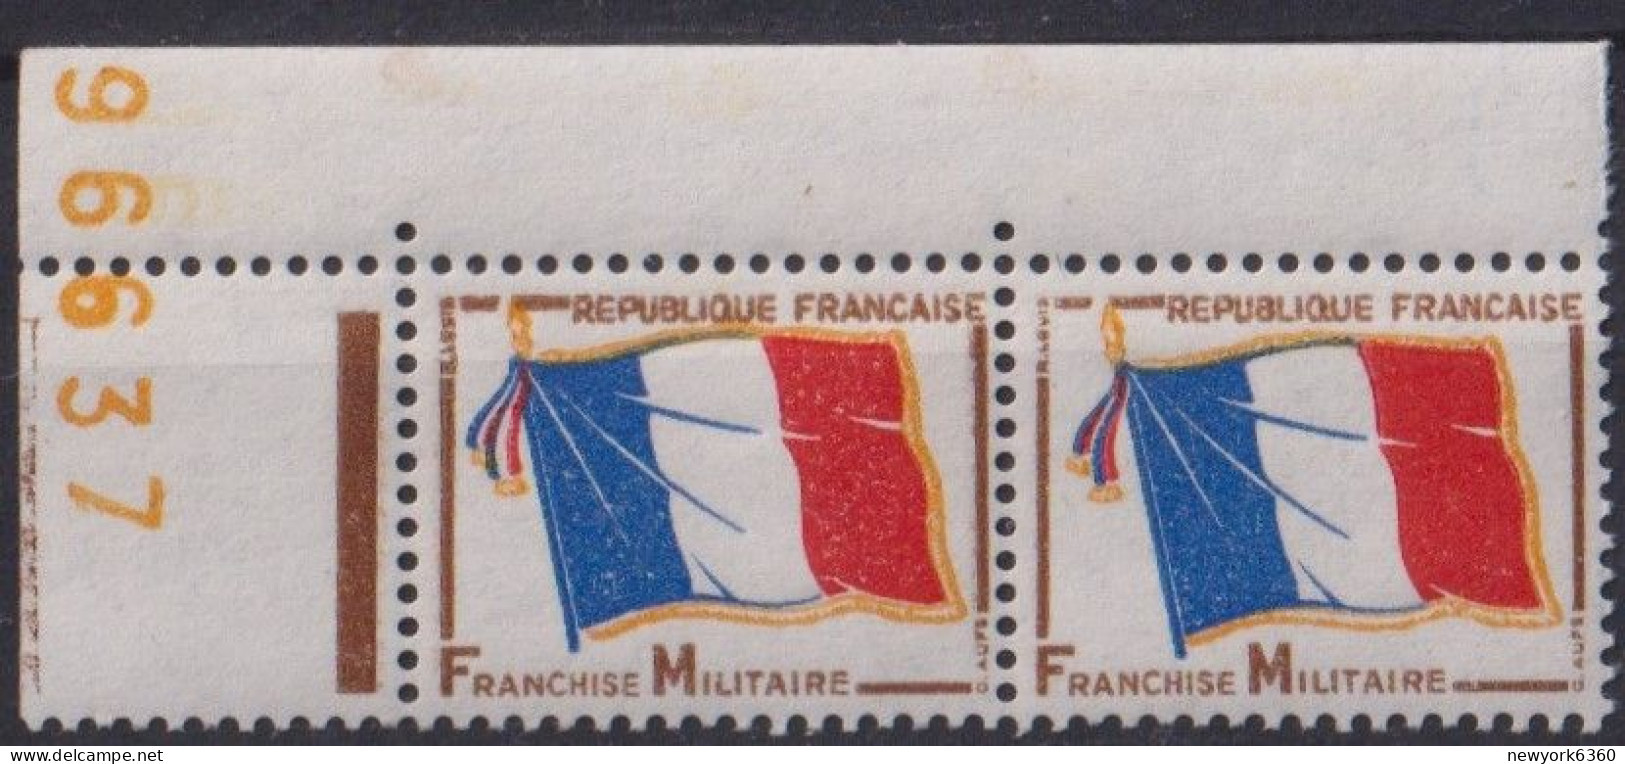 1964 FRANCE FRANCHISE MILITAIRE N** 13 MNH Paire - Militaire Zegels